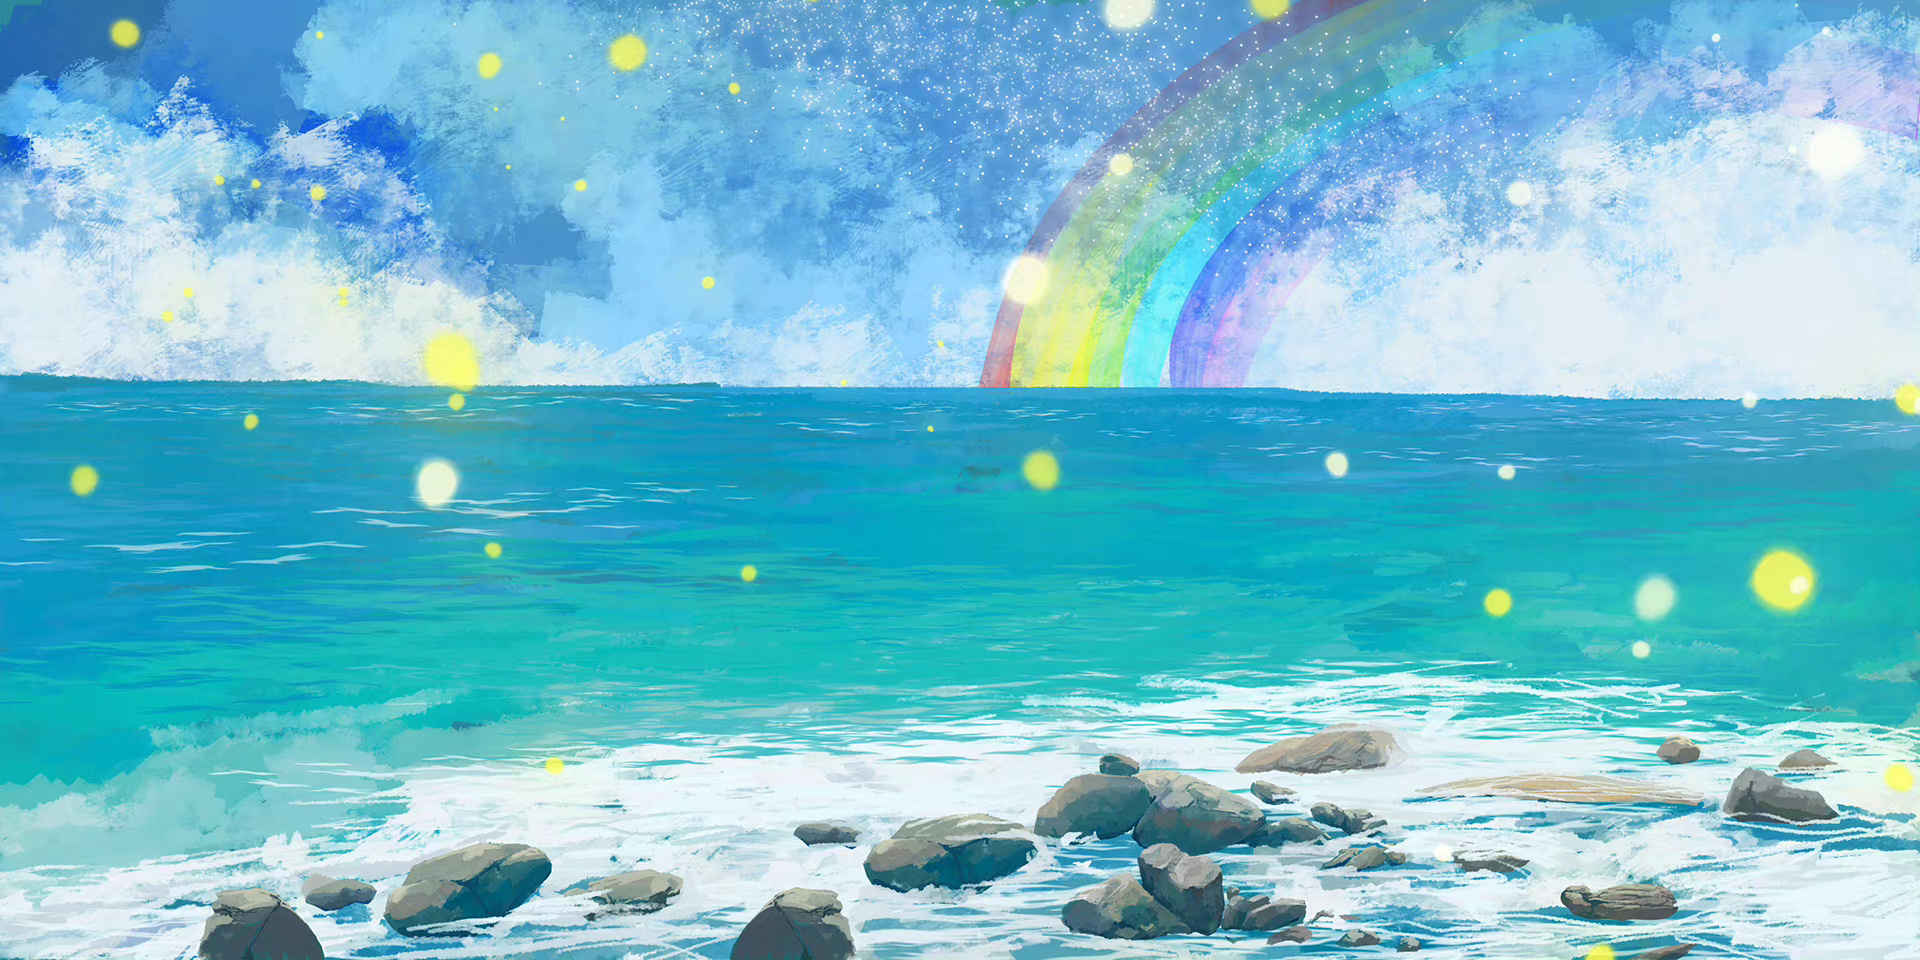 唯美梦幻手绘海洋彩虹清新风景插画素材